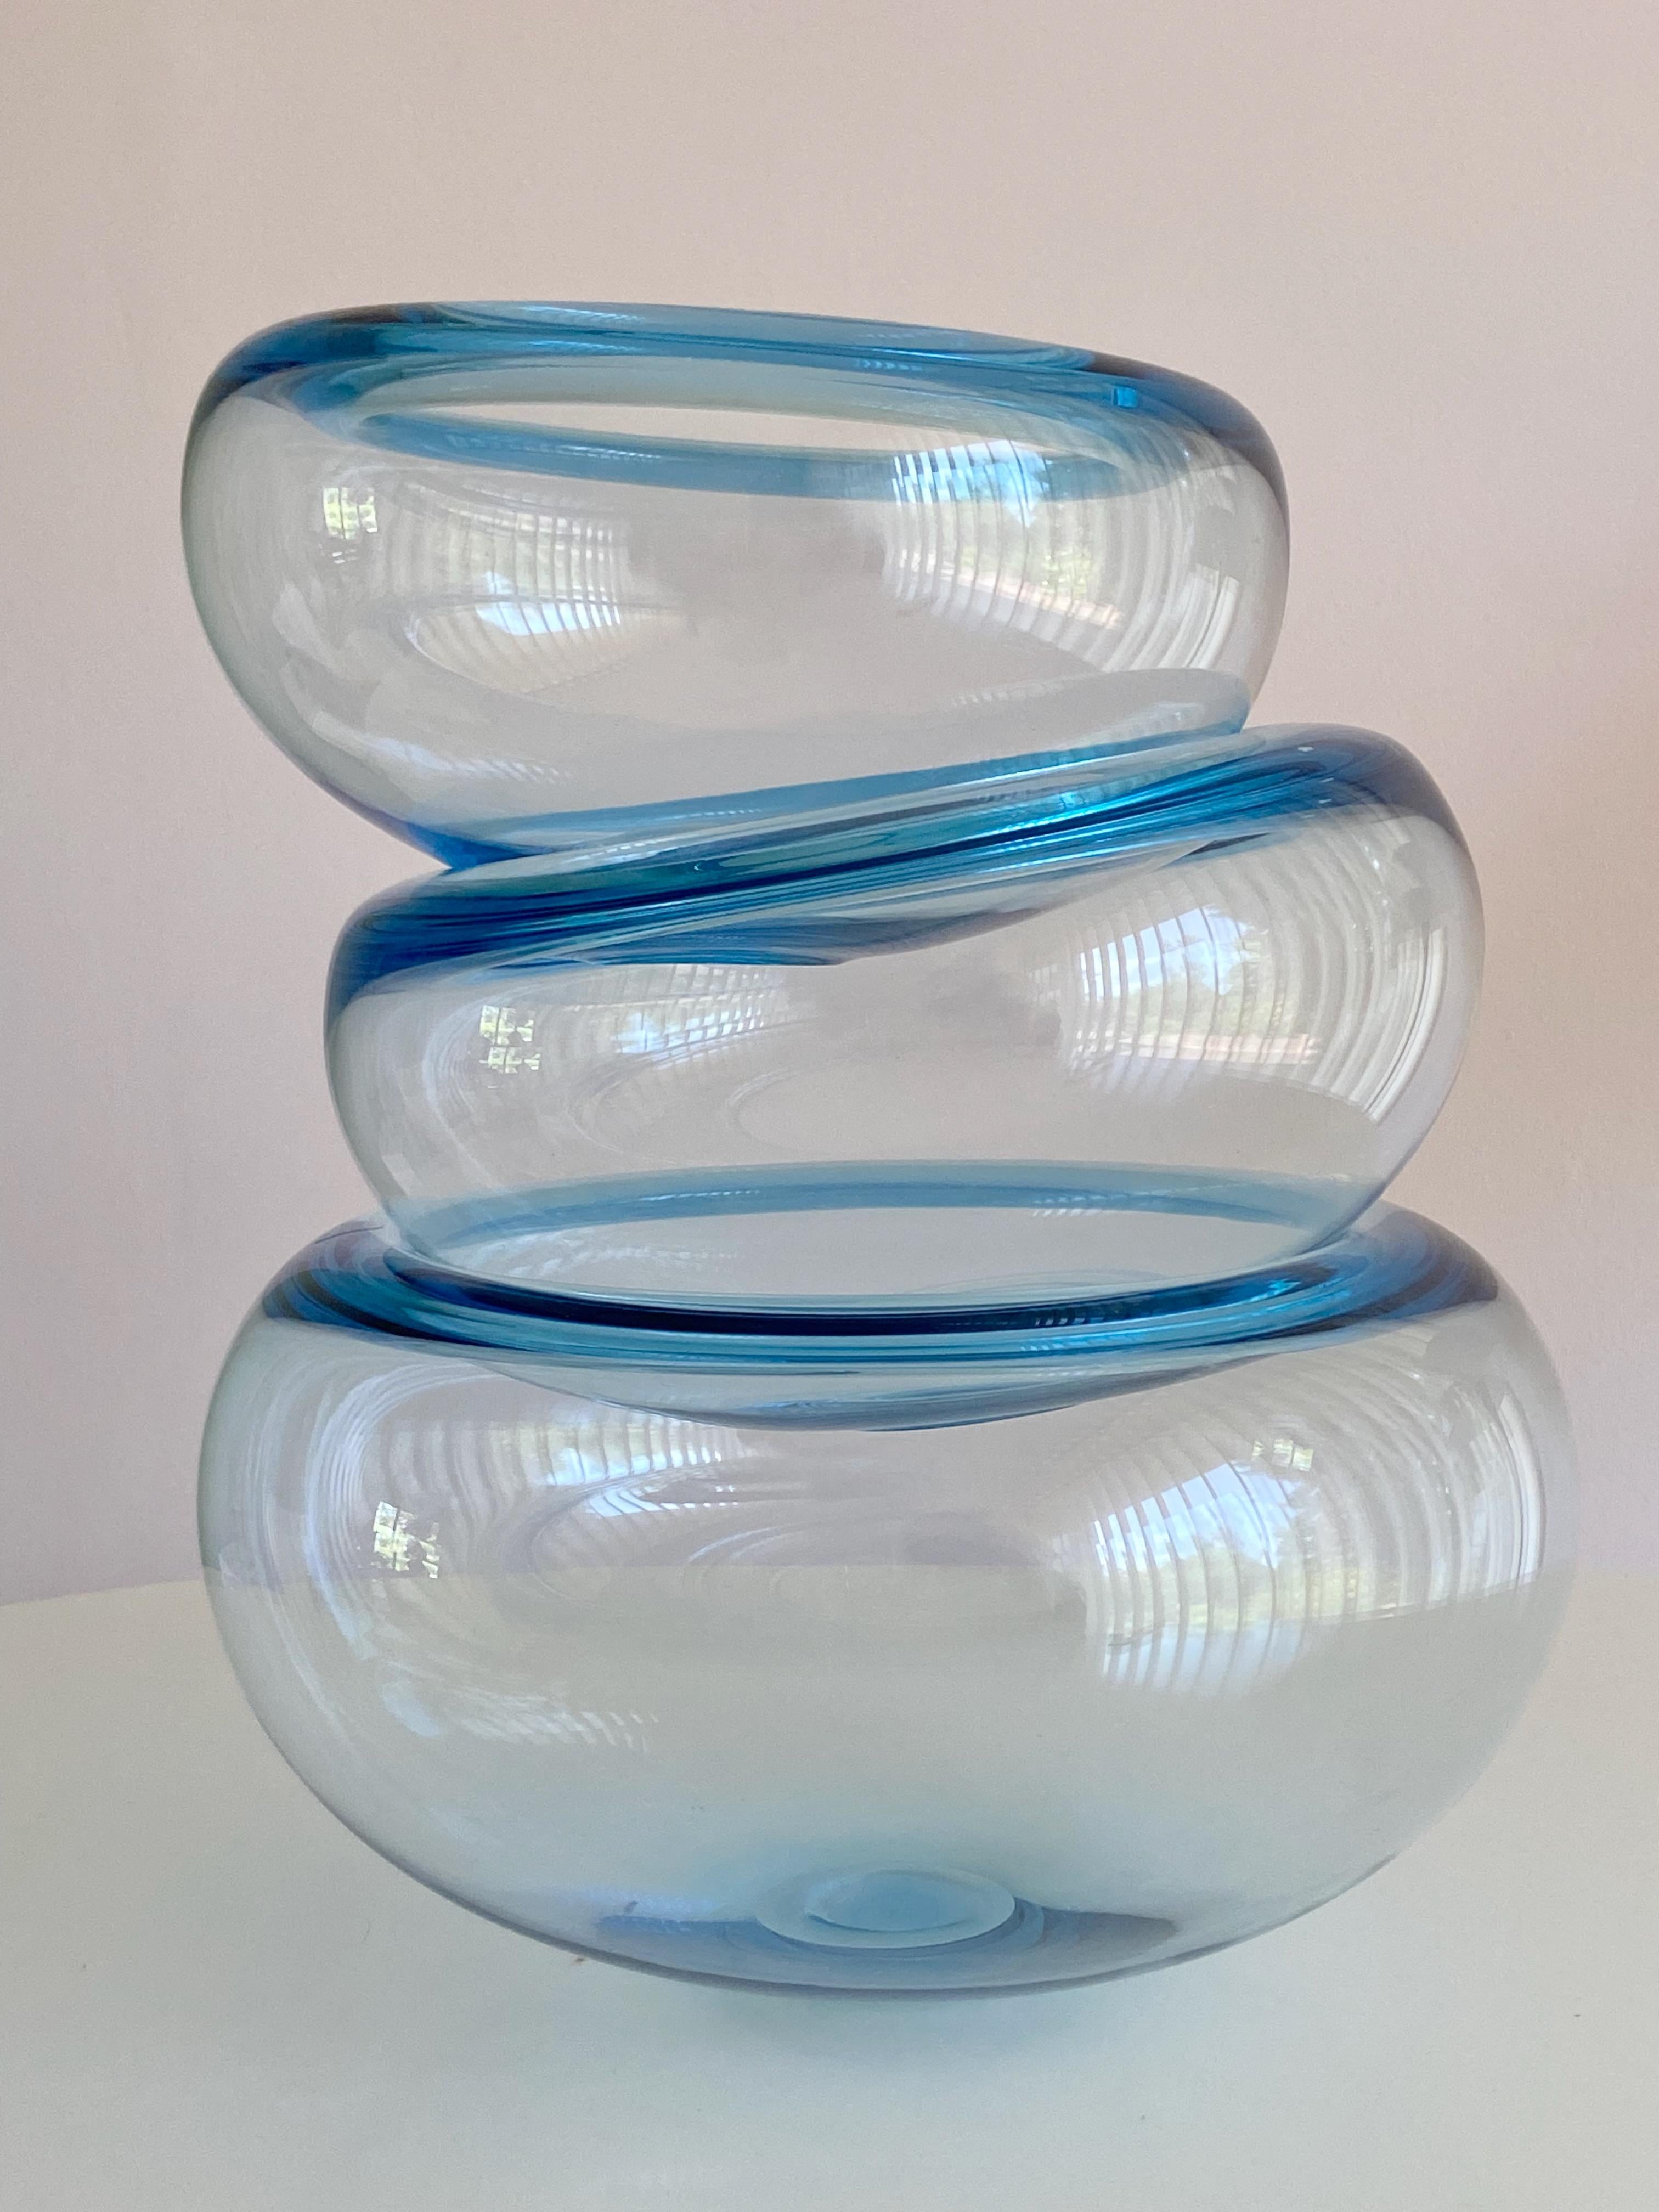 Bol de taille moyenne en verre bleu clair soufflé à la main, conçu par Per Lütken et fabriqué par Holmegaard au Danemark. 
Prix pour un bol, d'autres sont disponibles.